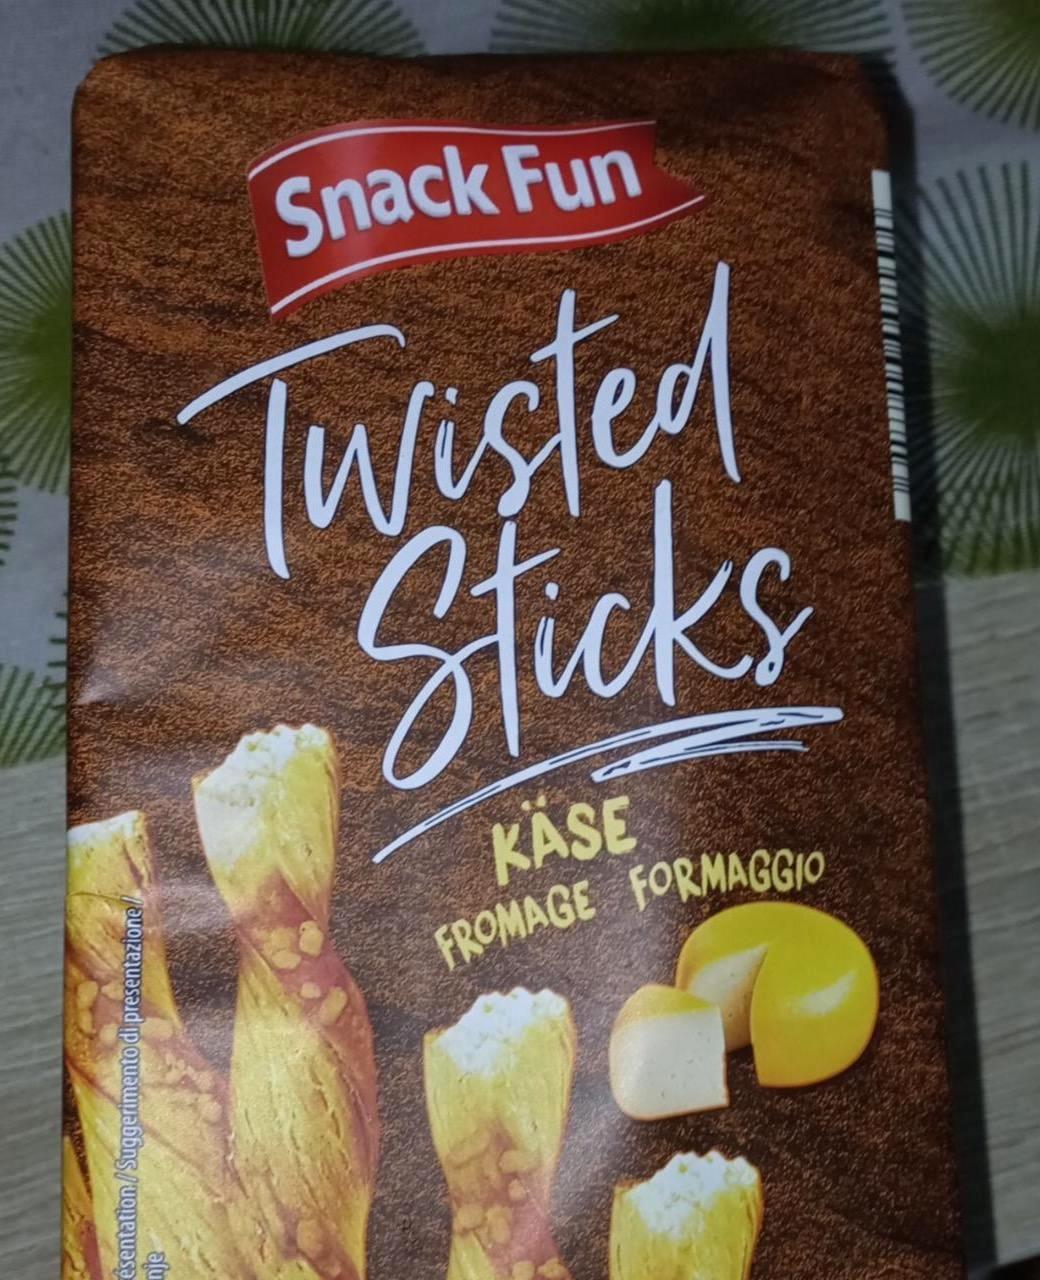 Képek - Twisted Sticks - Vajas rúd Sajtos Snack Fun